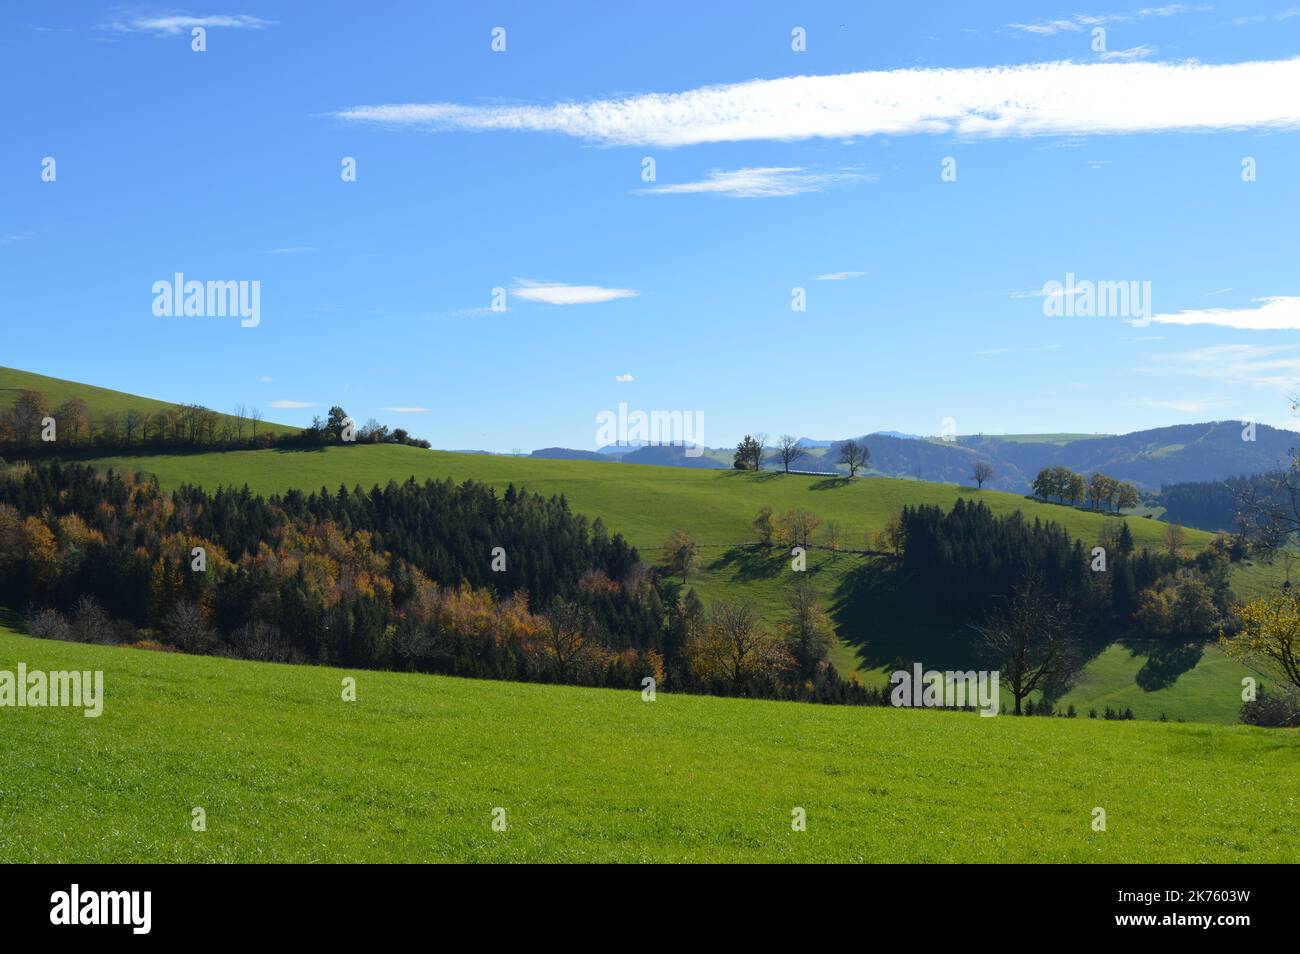 Hochkogel Panoramaweg im Herbst, grüne Hügel, Wanderparadies mit saftigen Weiden, Laubbäumen und sanften grünen Hügeln Foto Stock